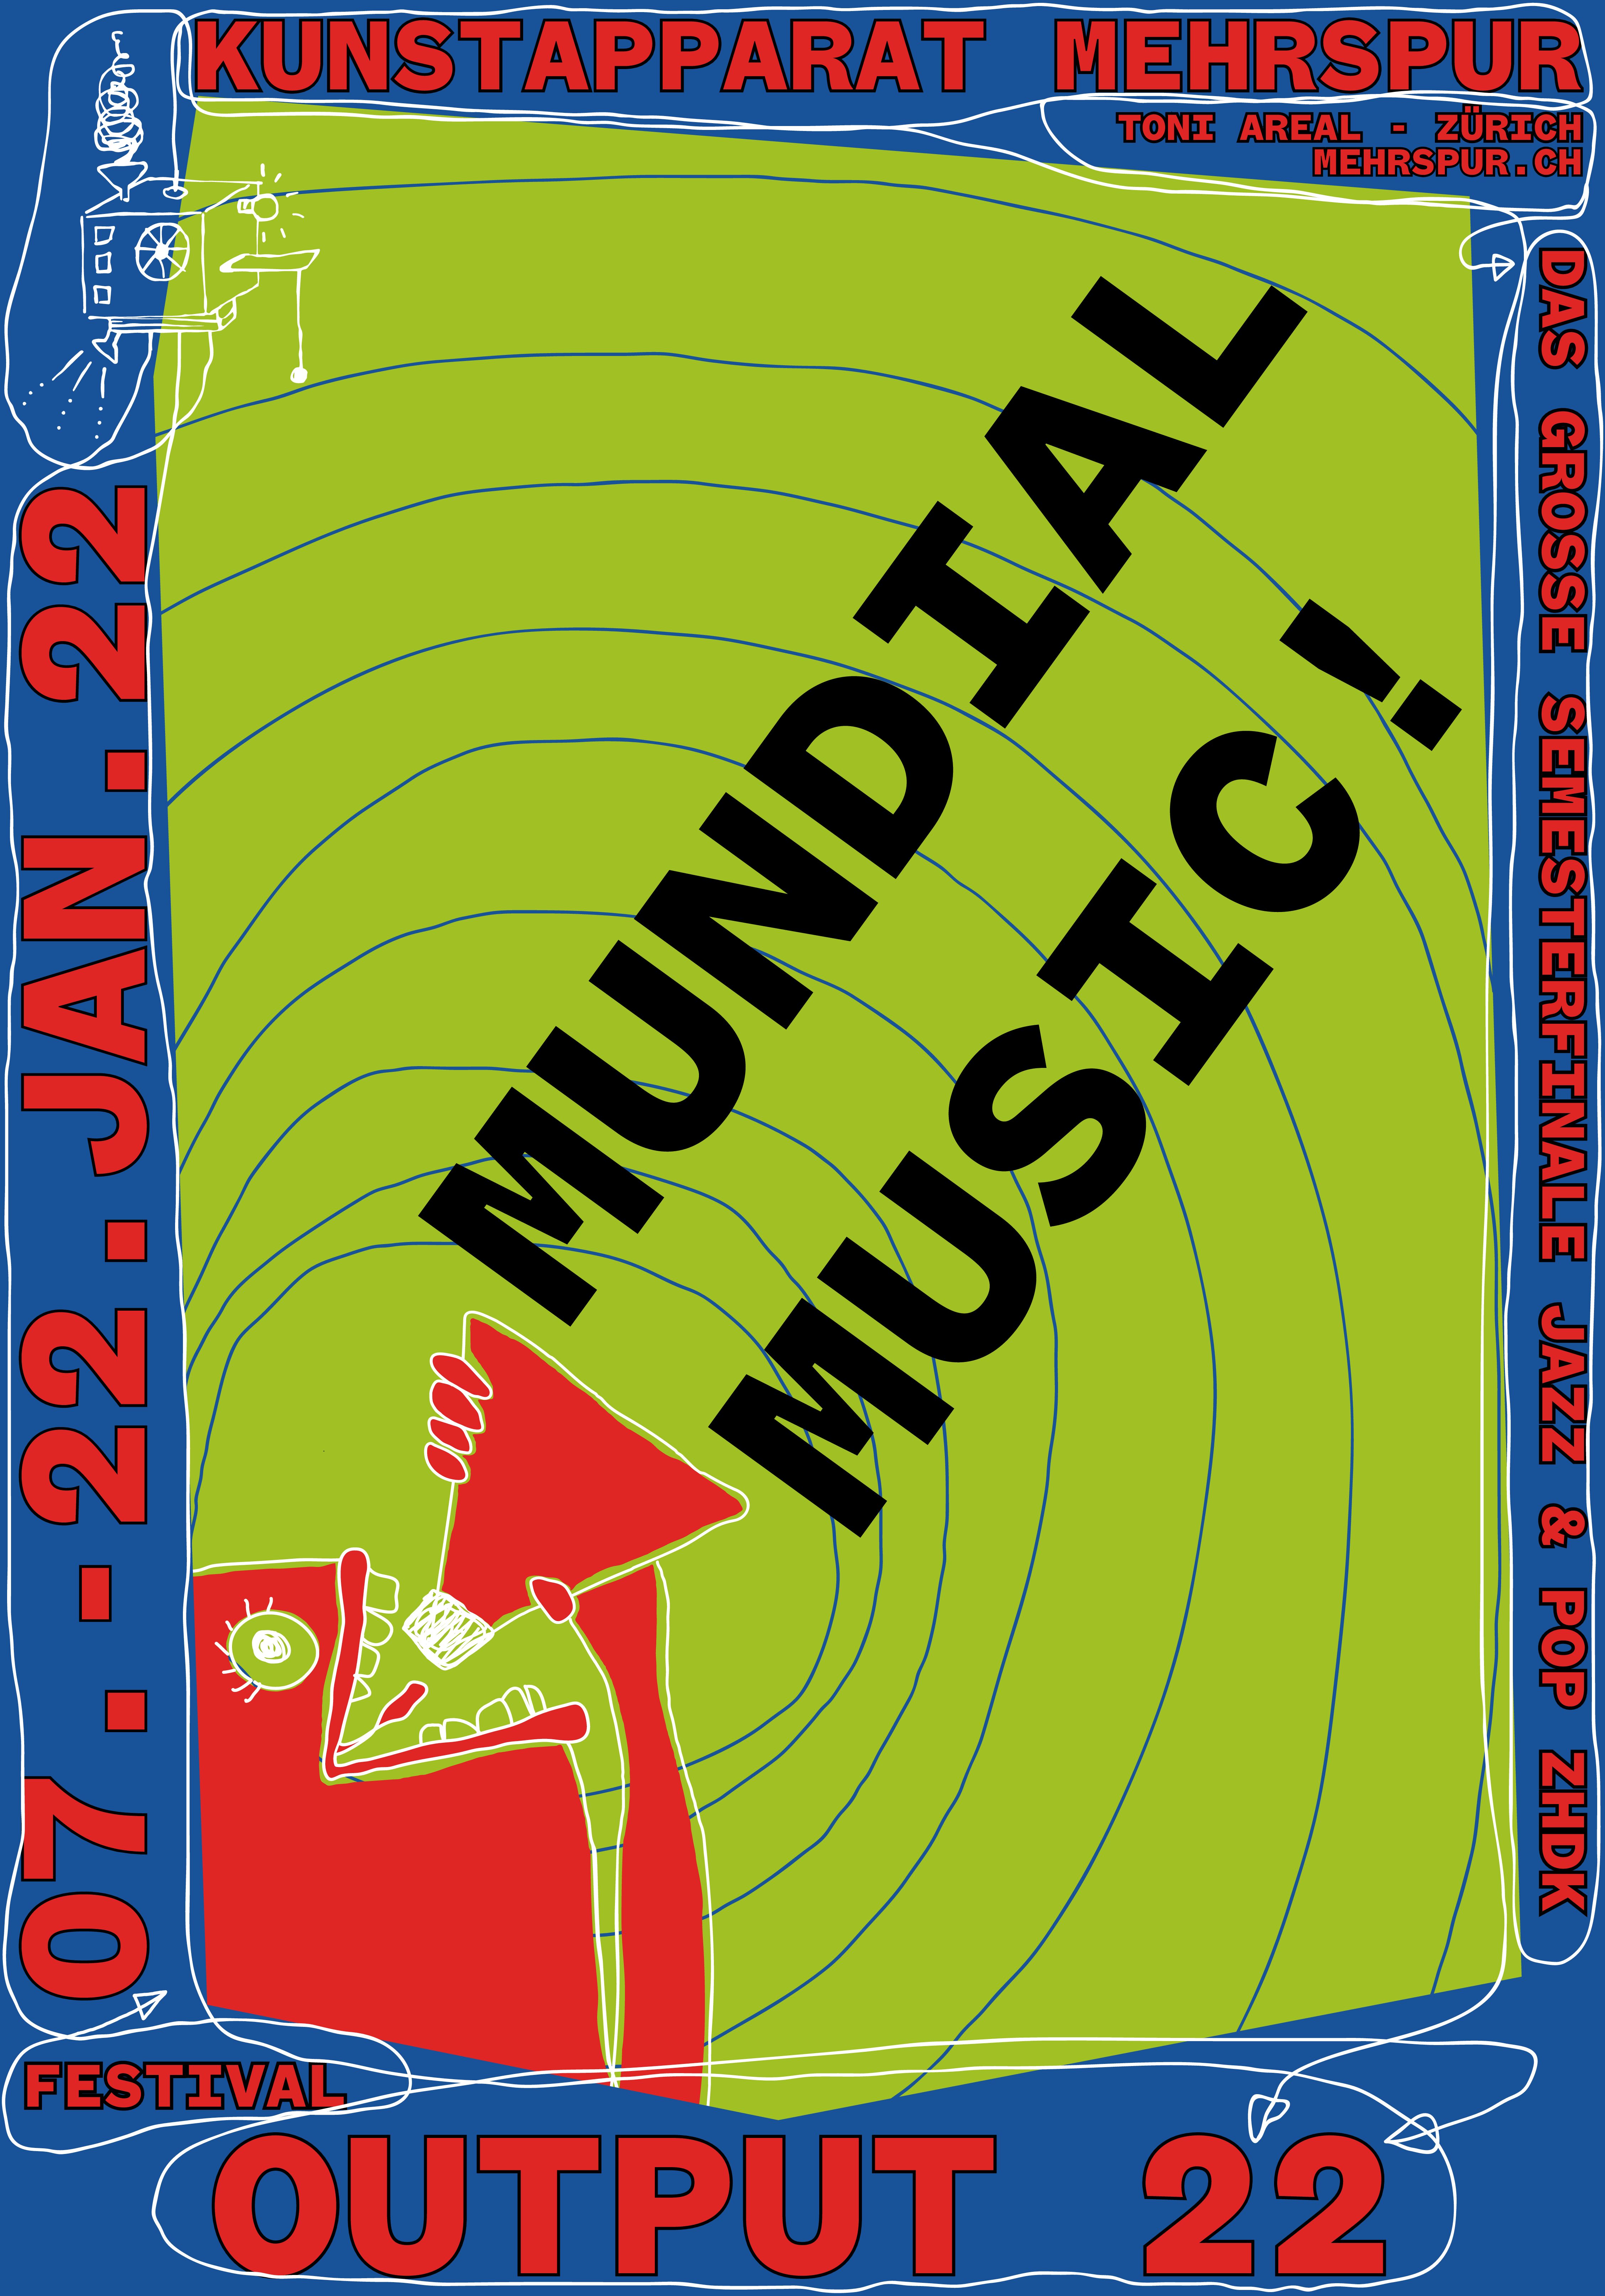 MUNDIAL MUSIC!